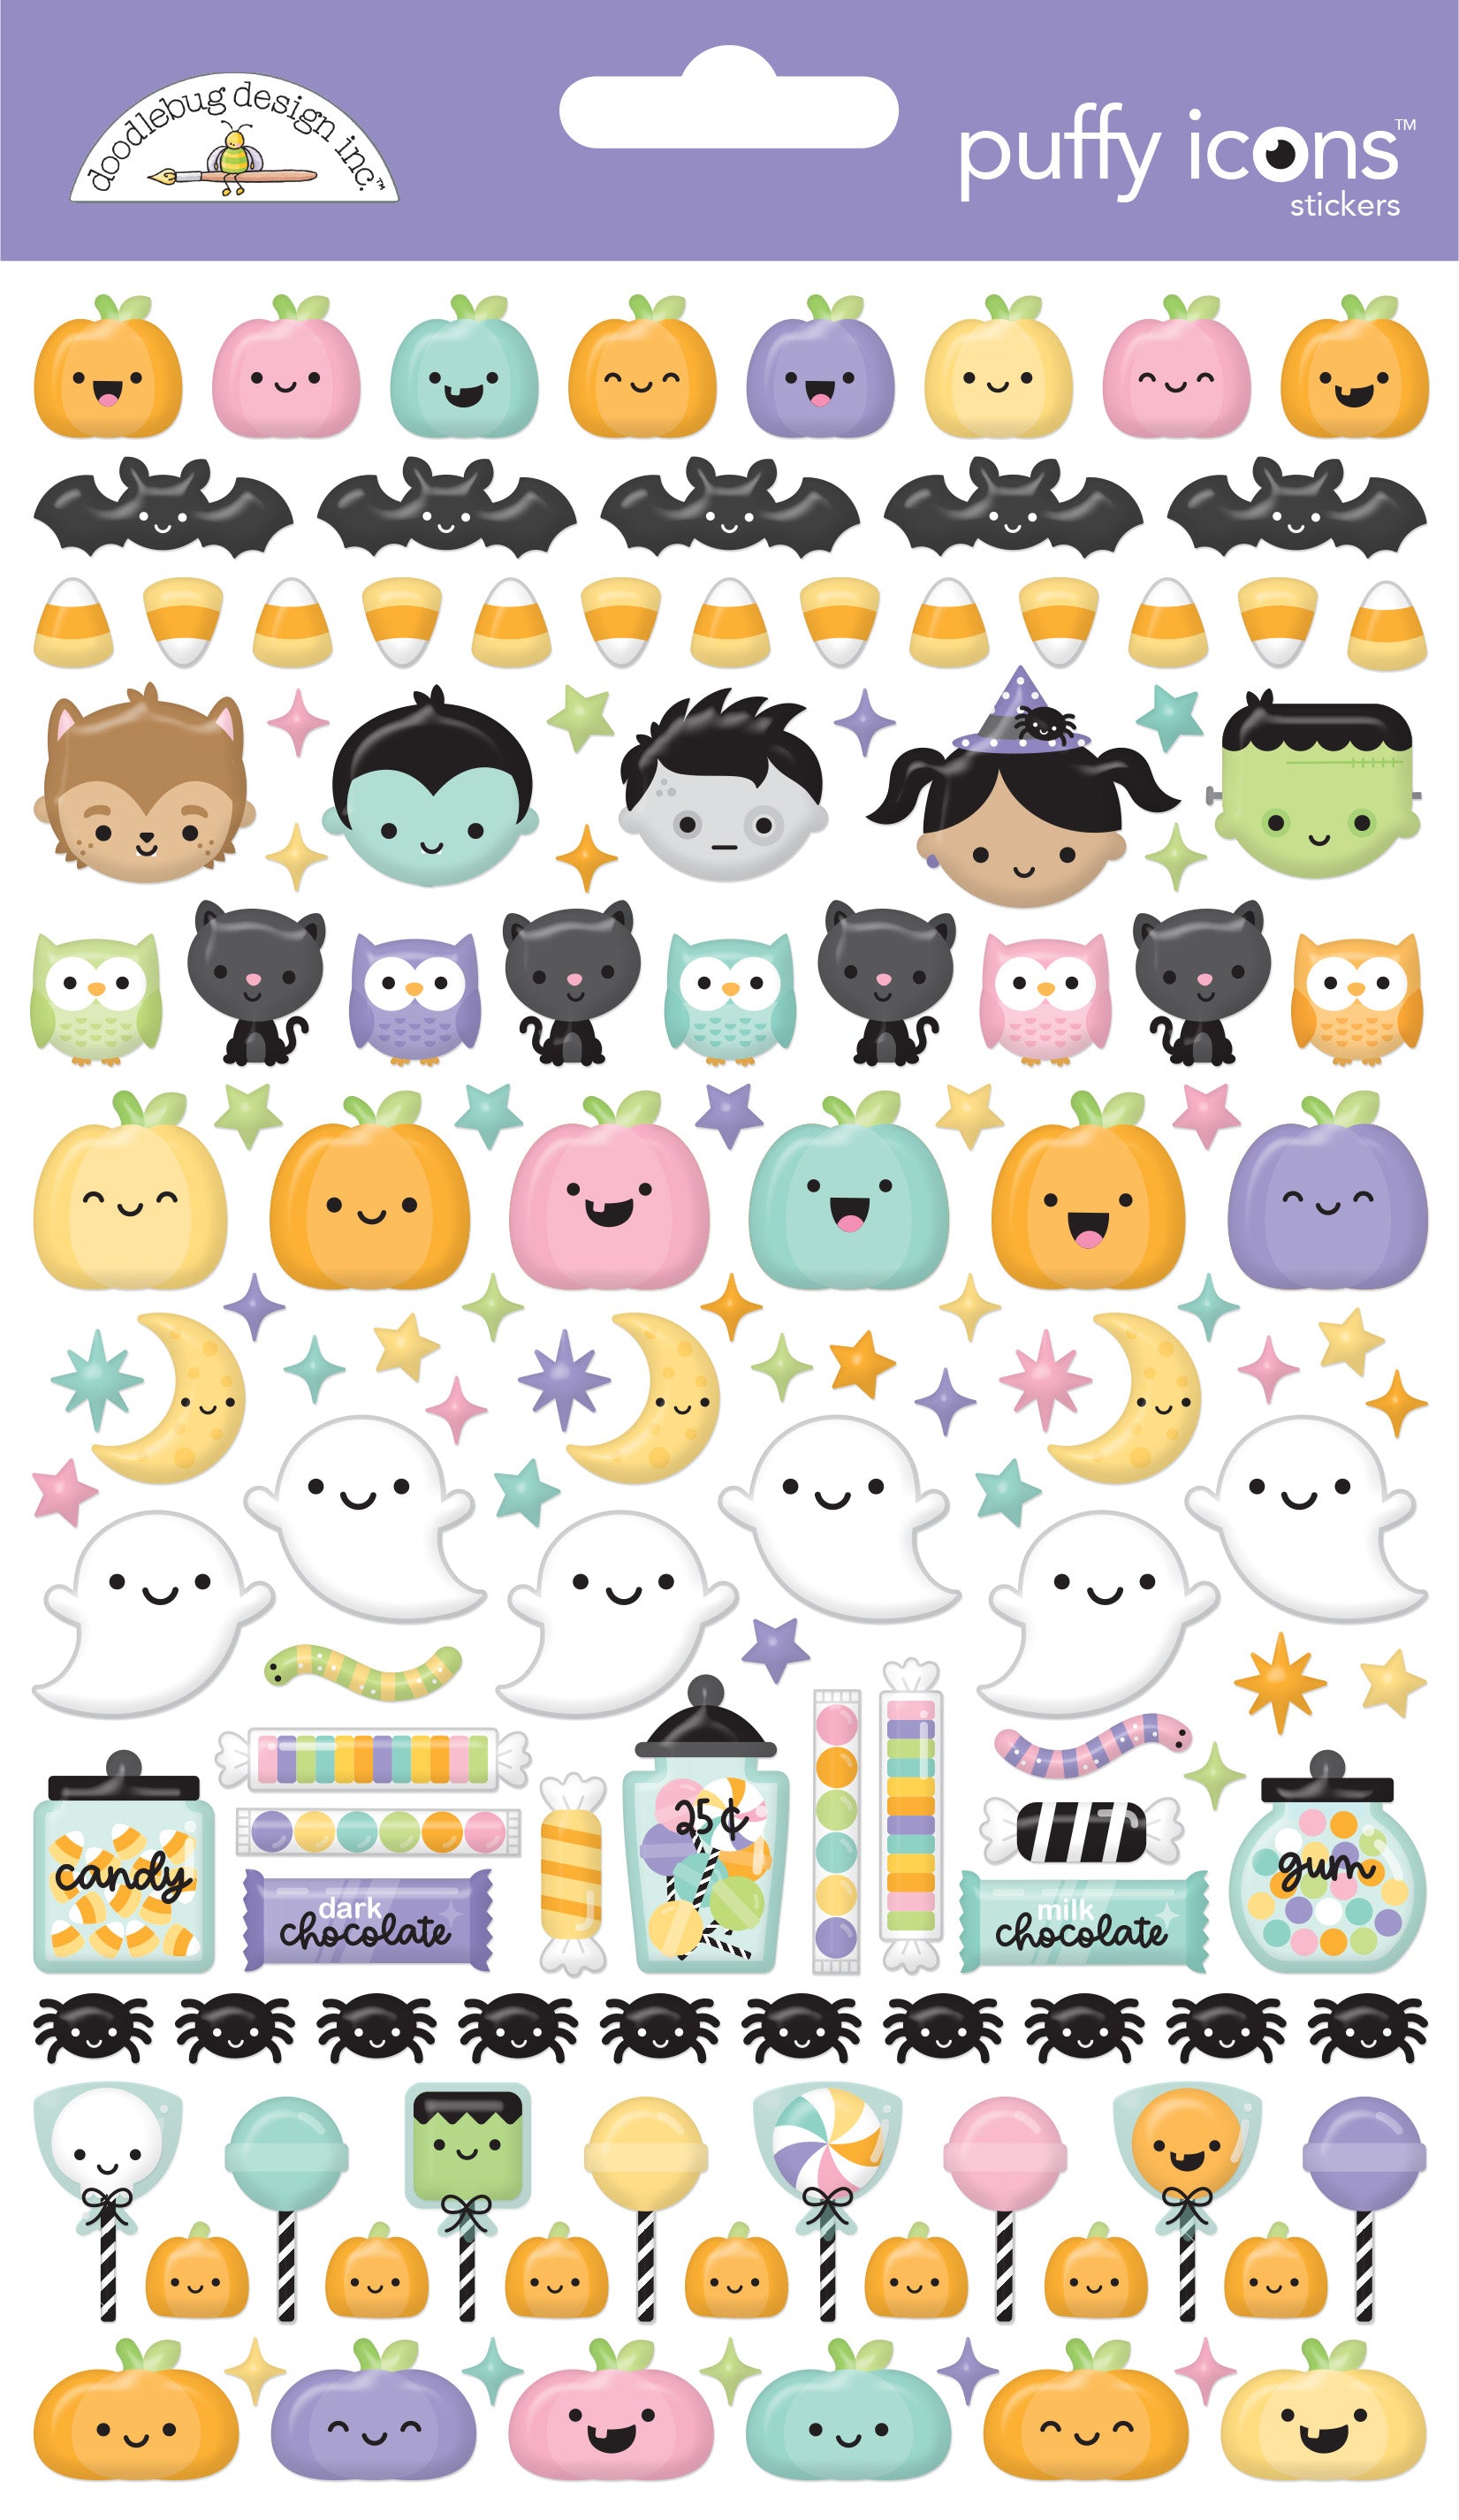 Cute Bunny 3D Puffy Sticker Sheet, Foam Sticker, Kids Craft Gift